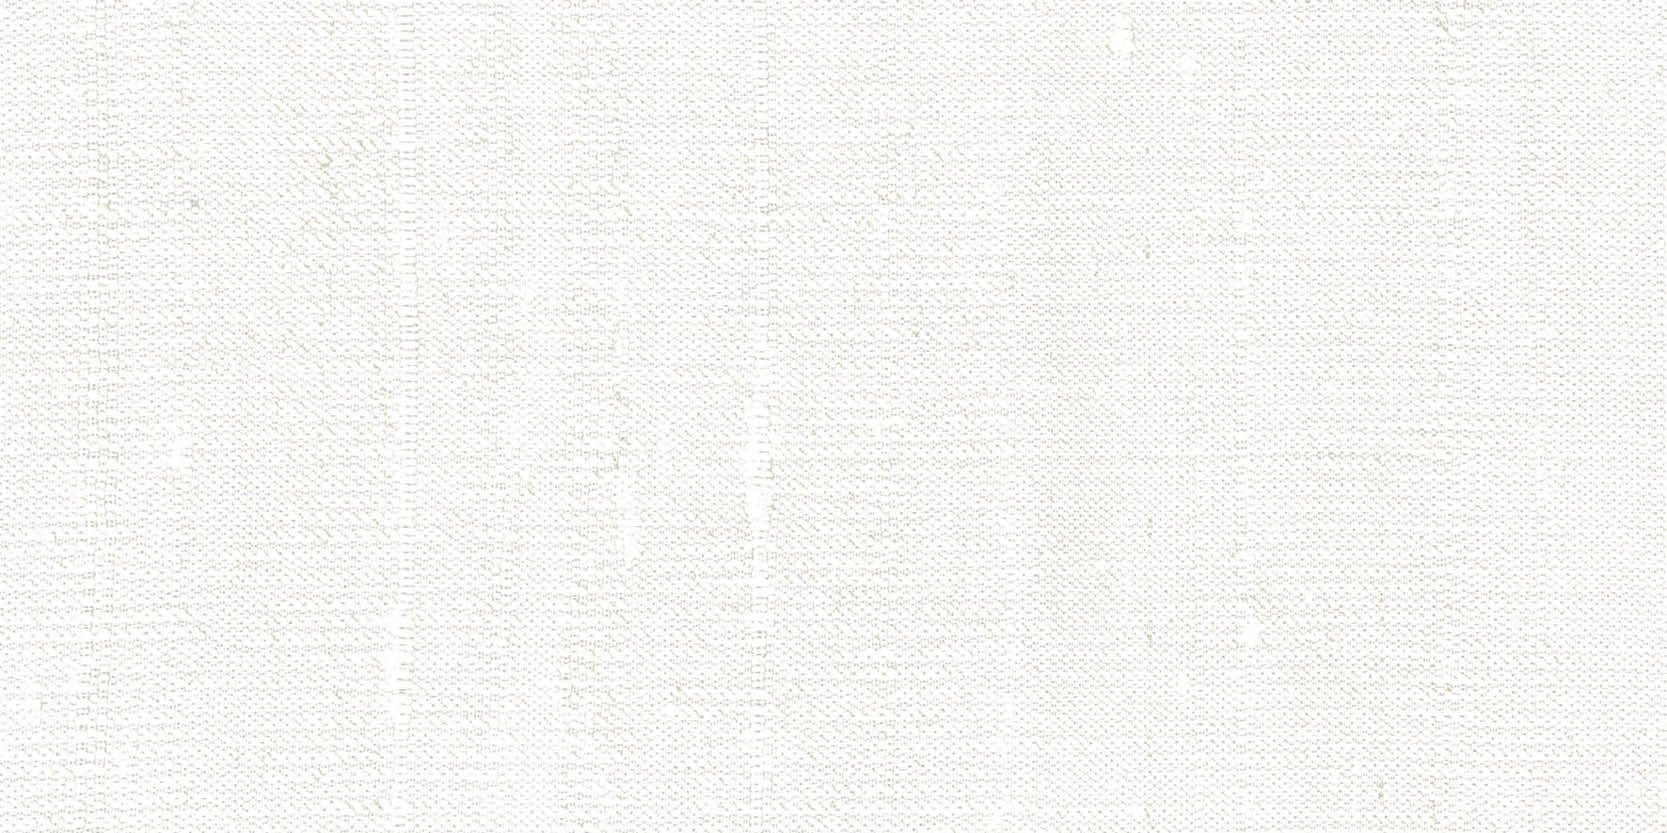 sammys-designer-flooring-tile-full-size-fabric-pure-white.jpg